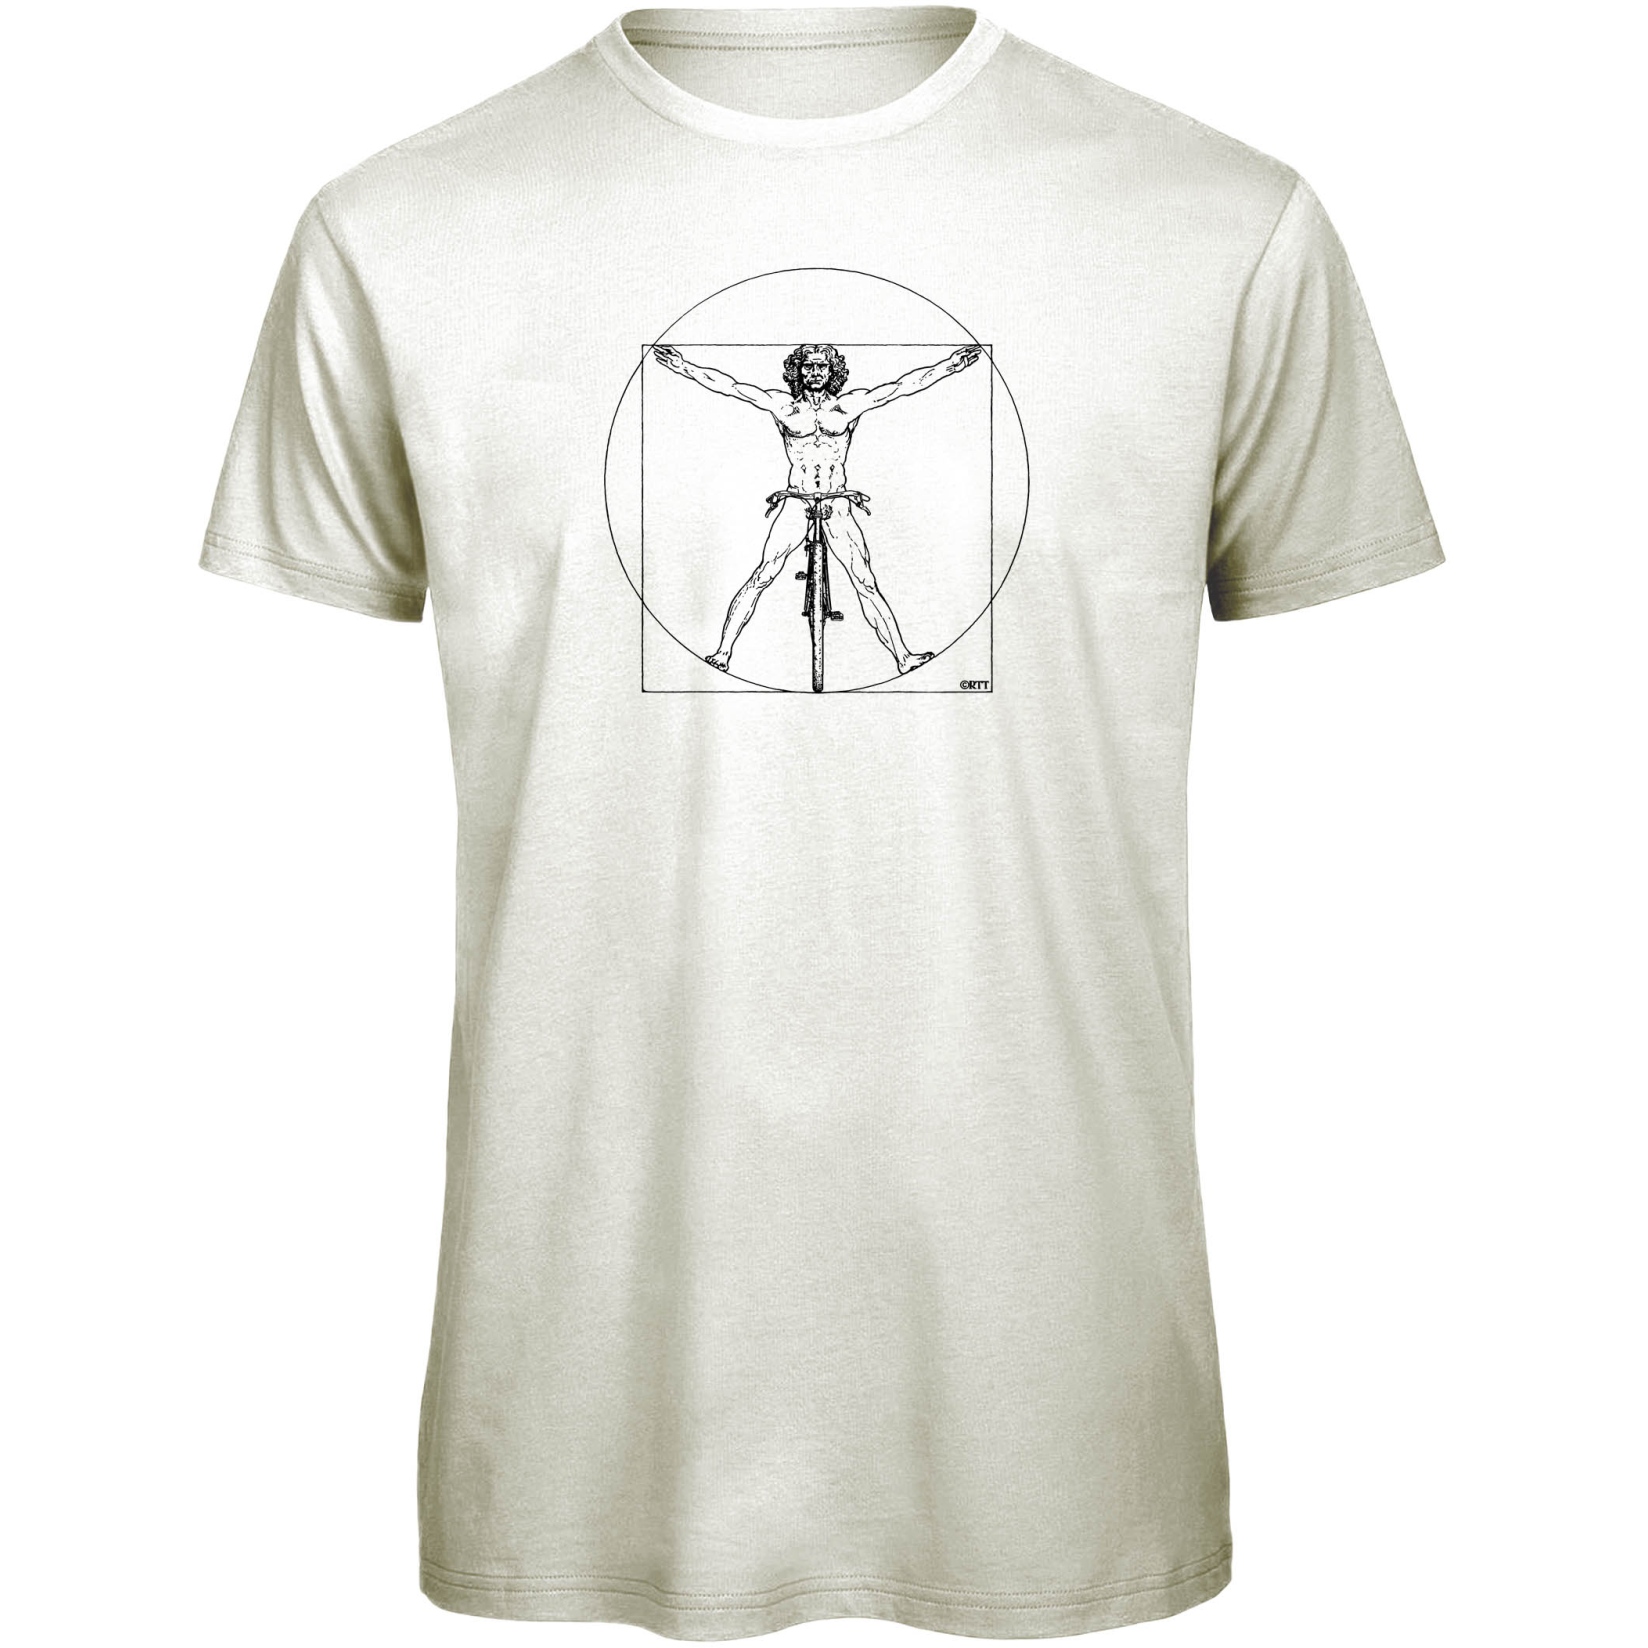 Produktbild von RTTshirts Fahrrad T-Shirt DaVinci - weiss